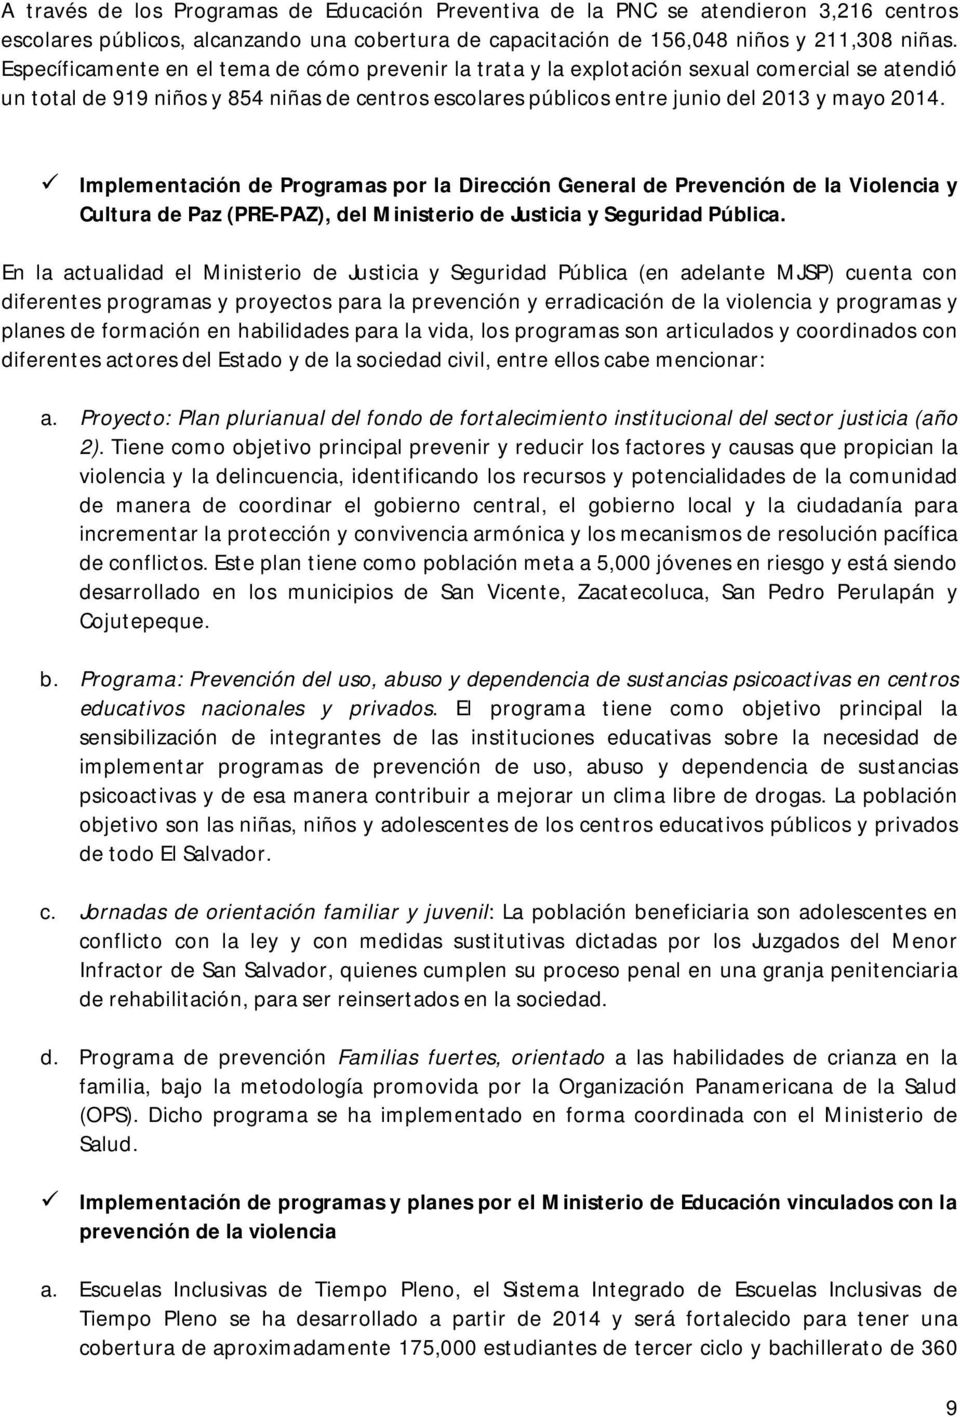 Implementación de Programas por la Dirección General de Prevención de la Violencia y Cultura de Paz (PRE-PAZ), del Ministerio de Justicia y Seguridad Pública.